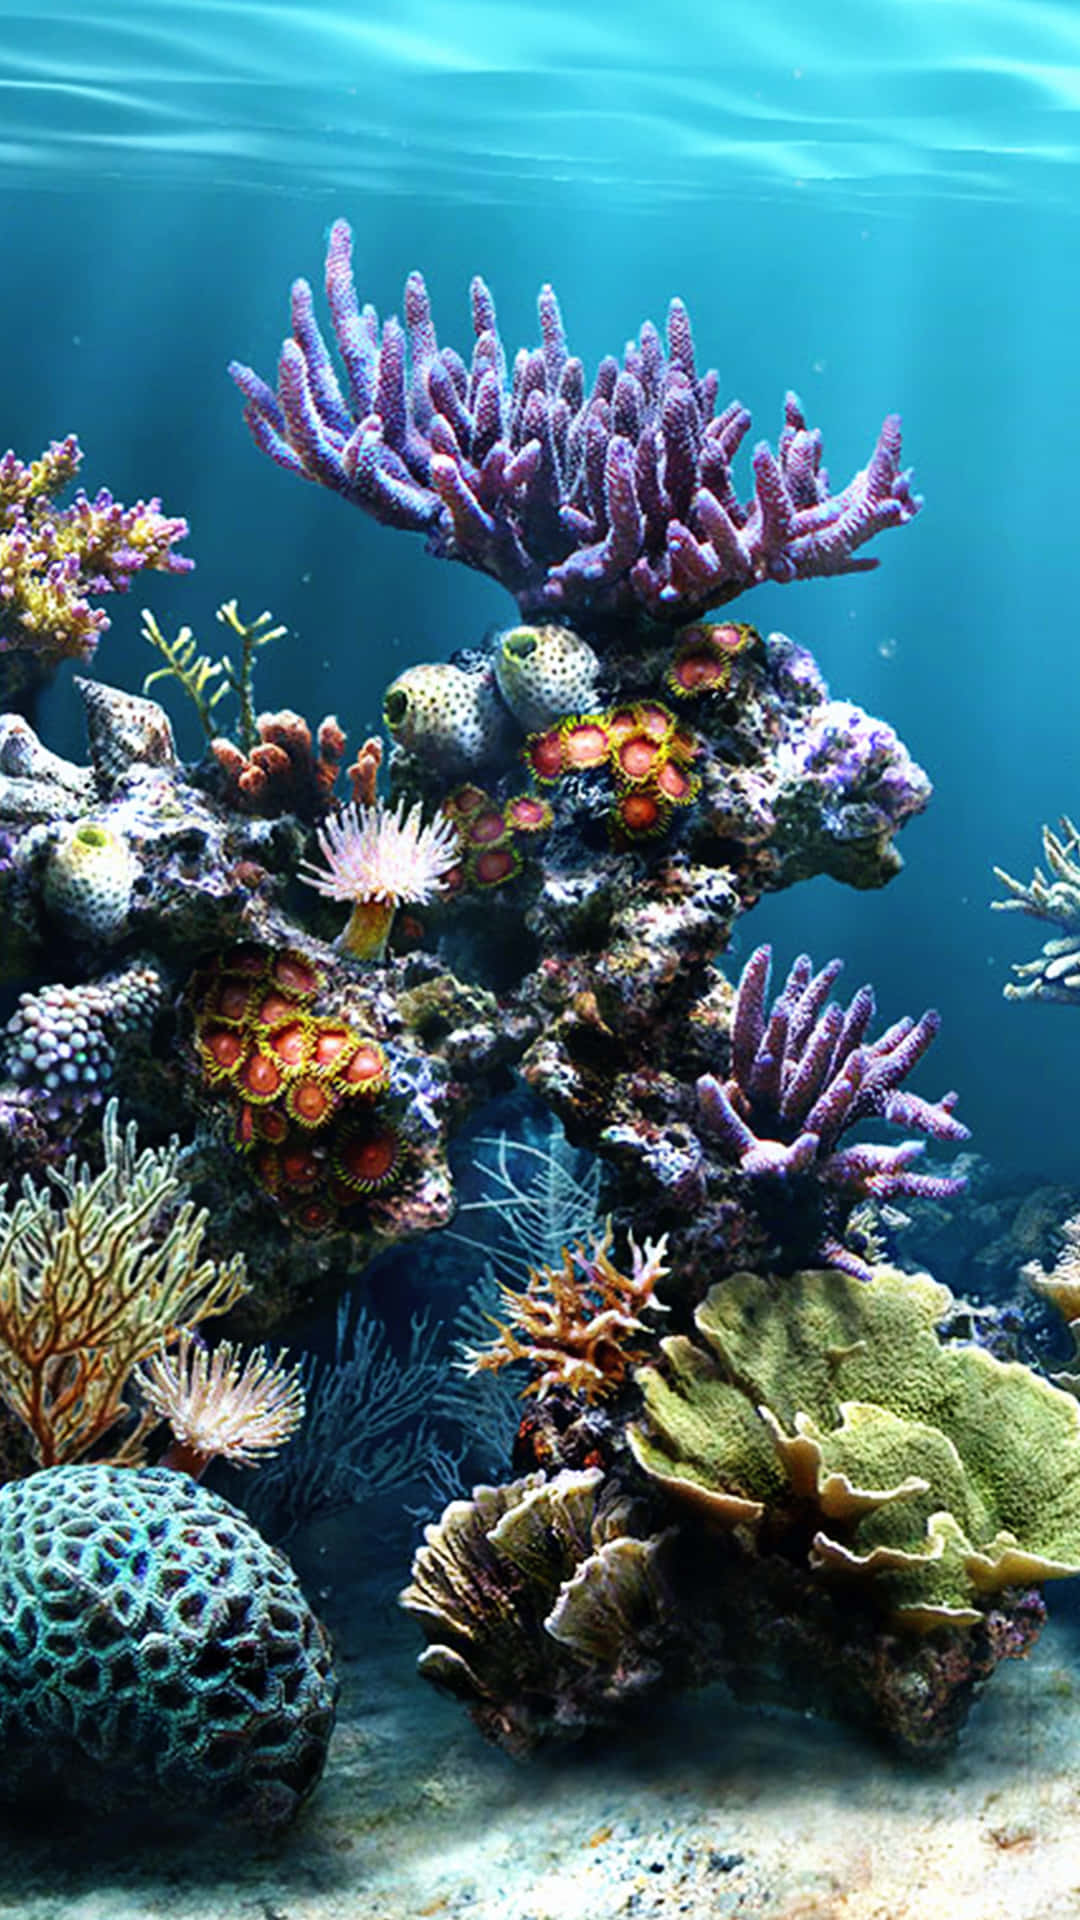 Vivil'esperienza Della Bellezza Di Una Barriera Corallina Come Mai Prima D'ora